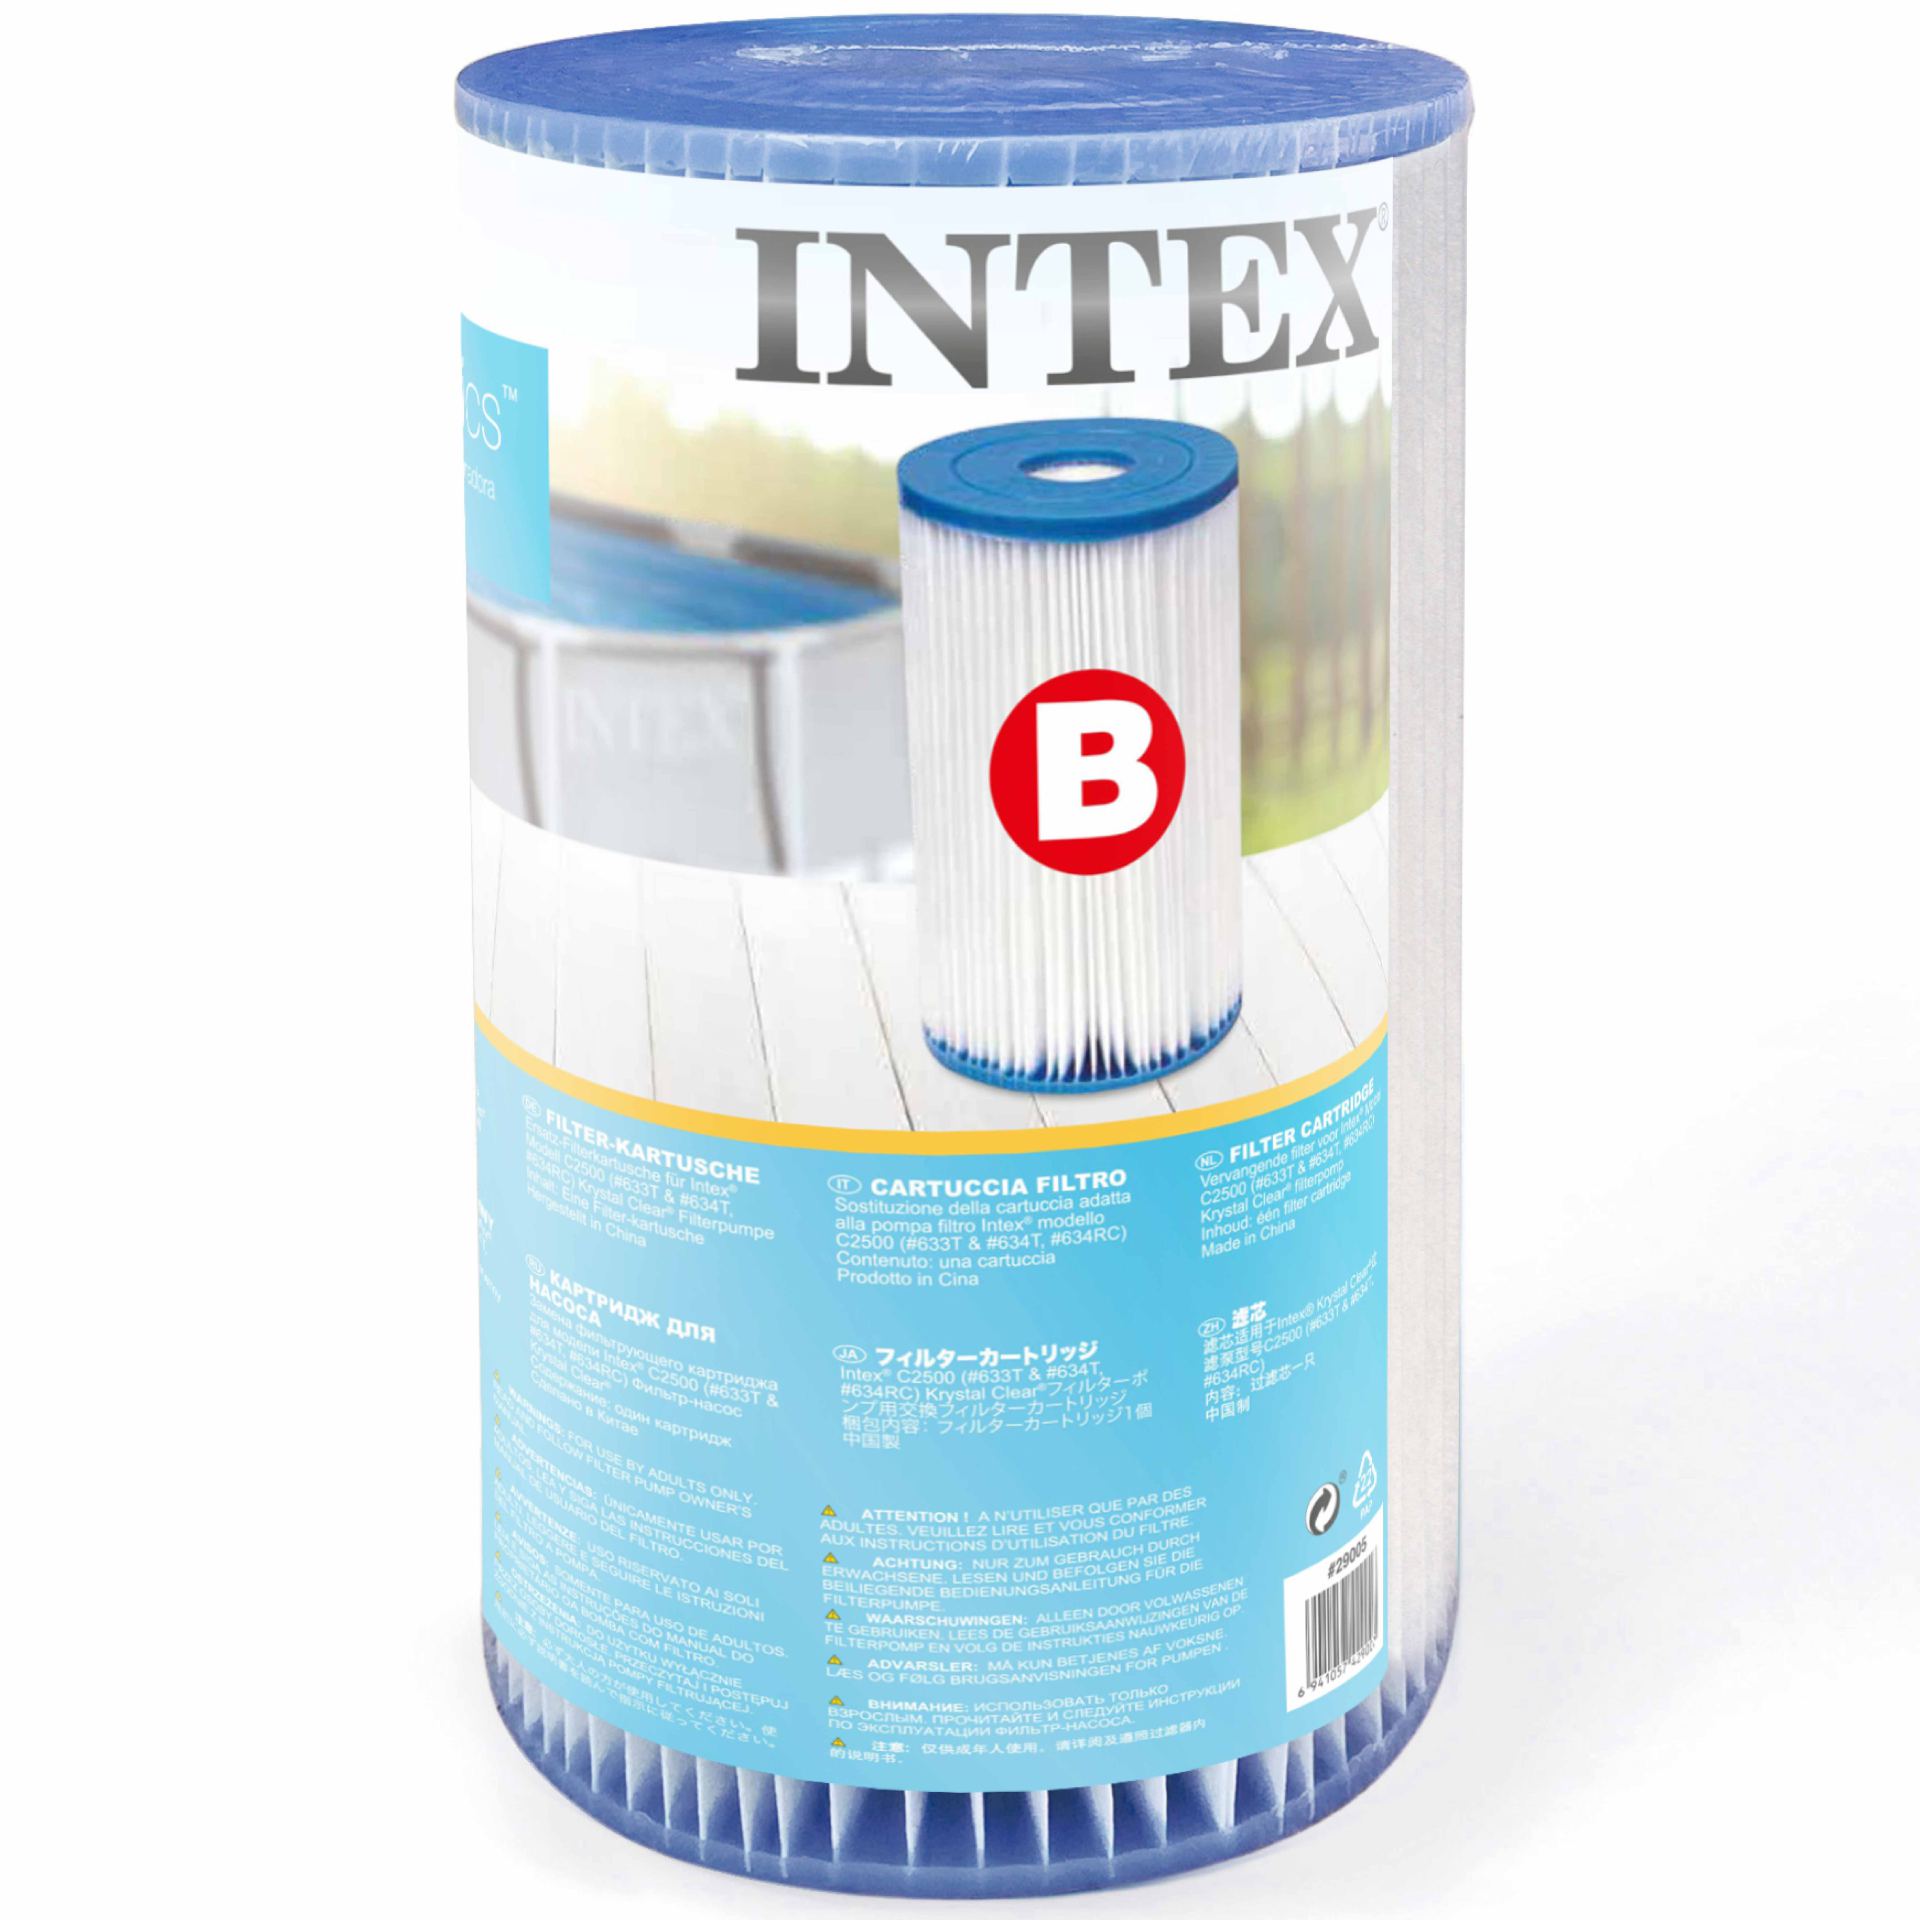 Intex filter cartridge B